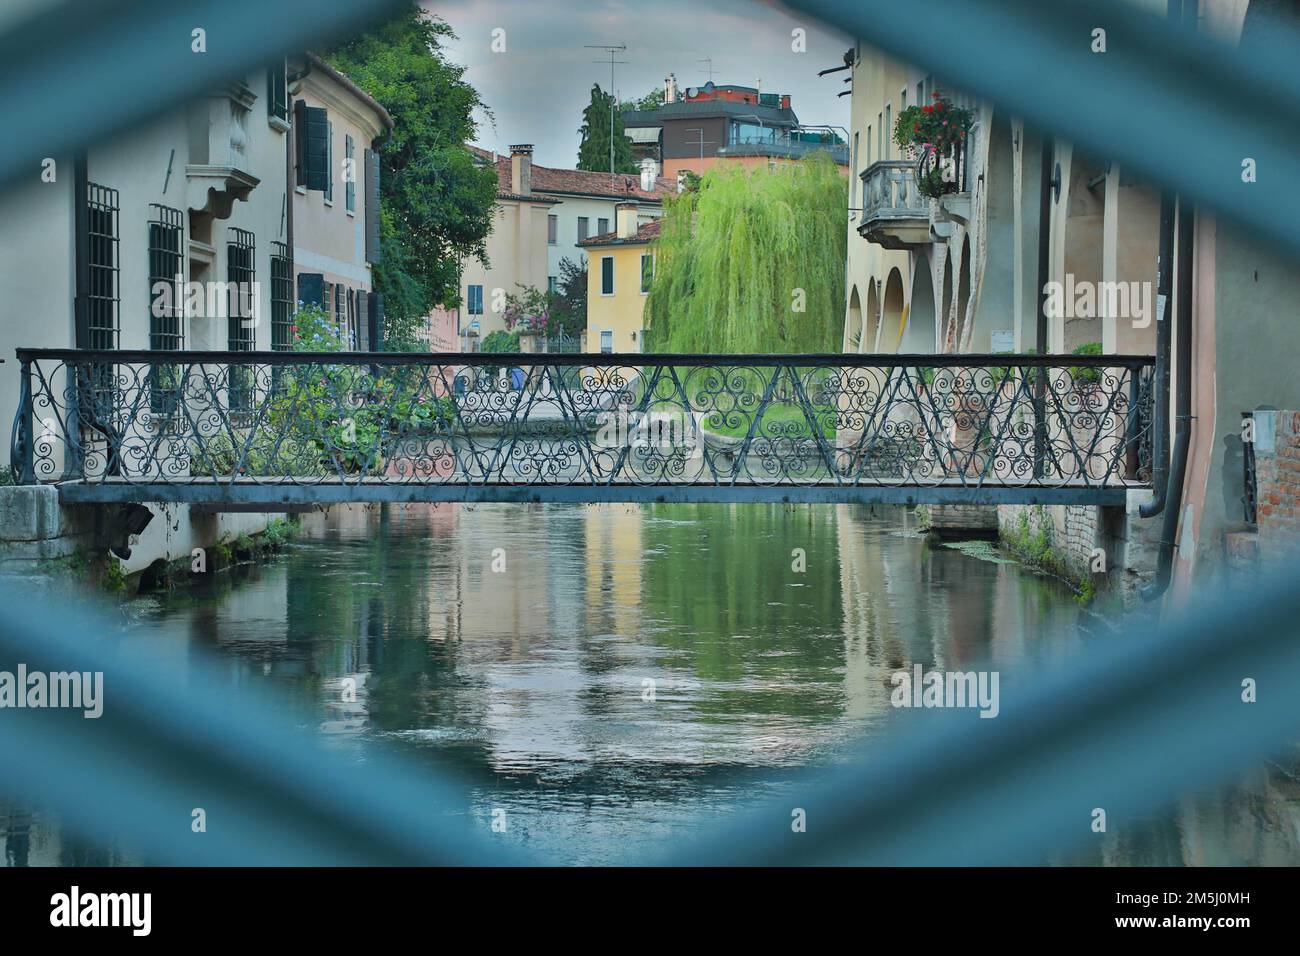 Treviso e Ponte Buranelli incorniciato sul canale del fiume Sile - centro storico della città artistica italiana da visitare Stock Photo